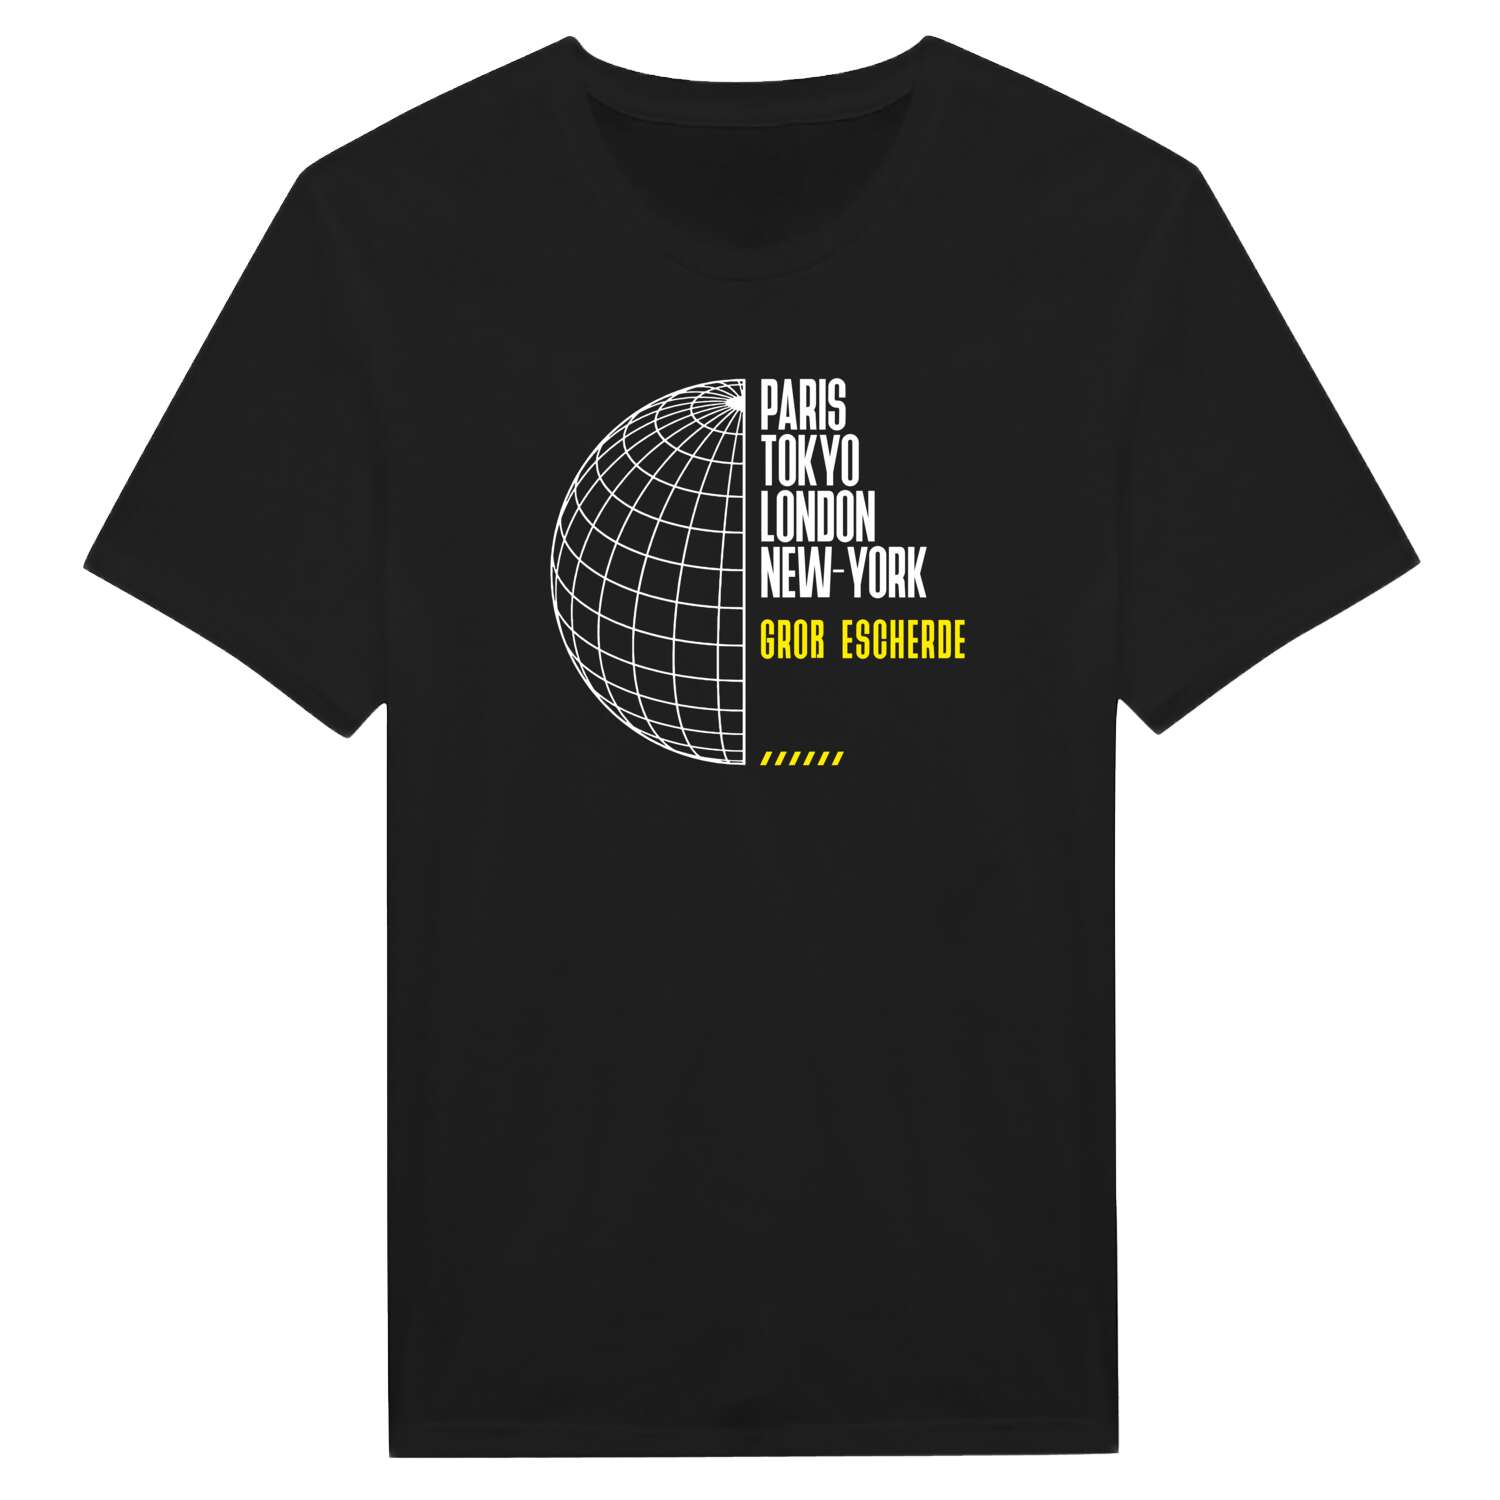 Groß Escherde T-Shirt »Paris Tokyo London«